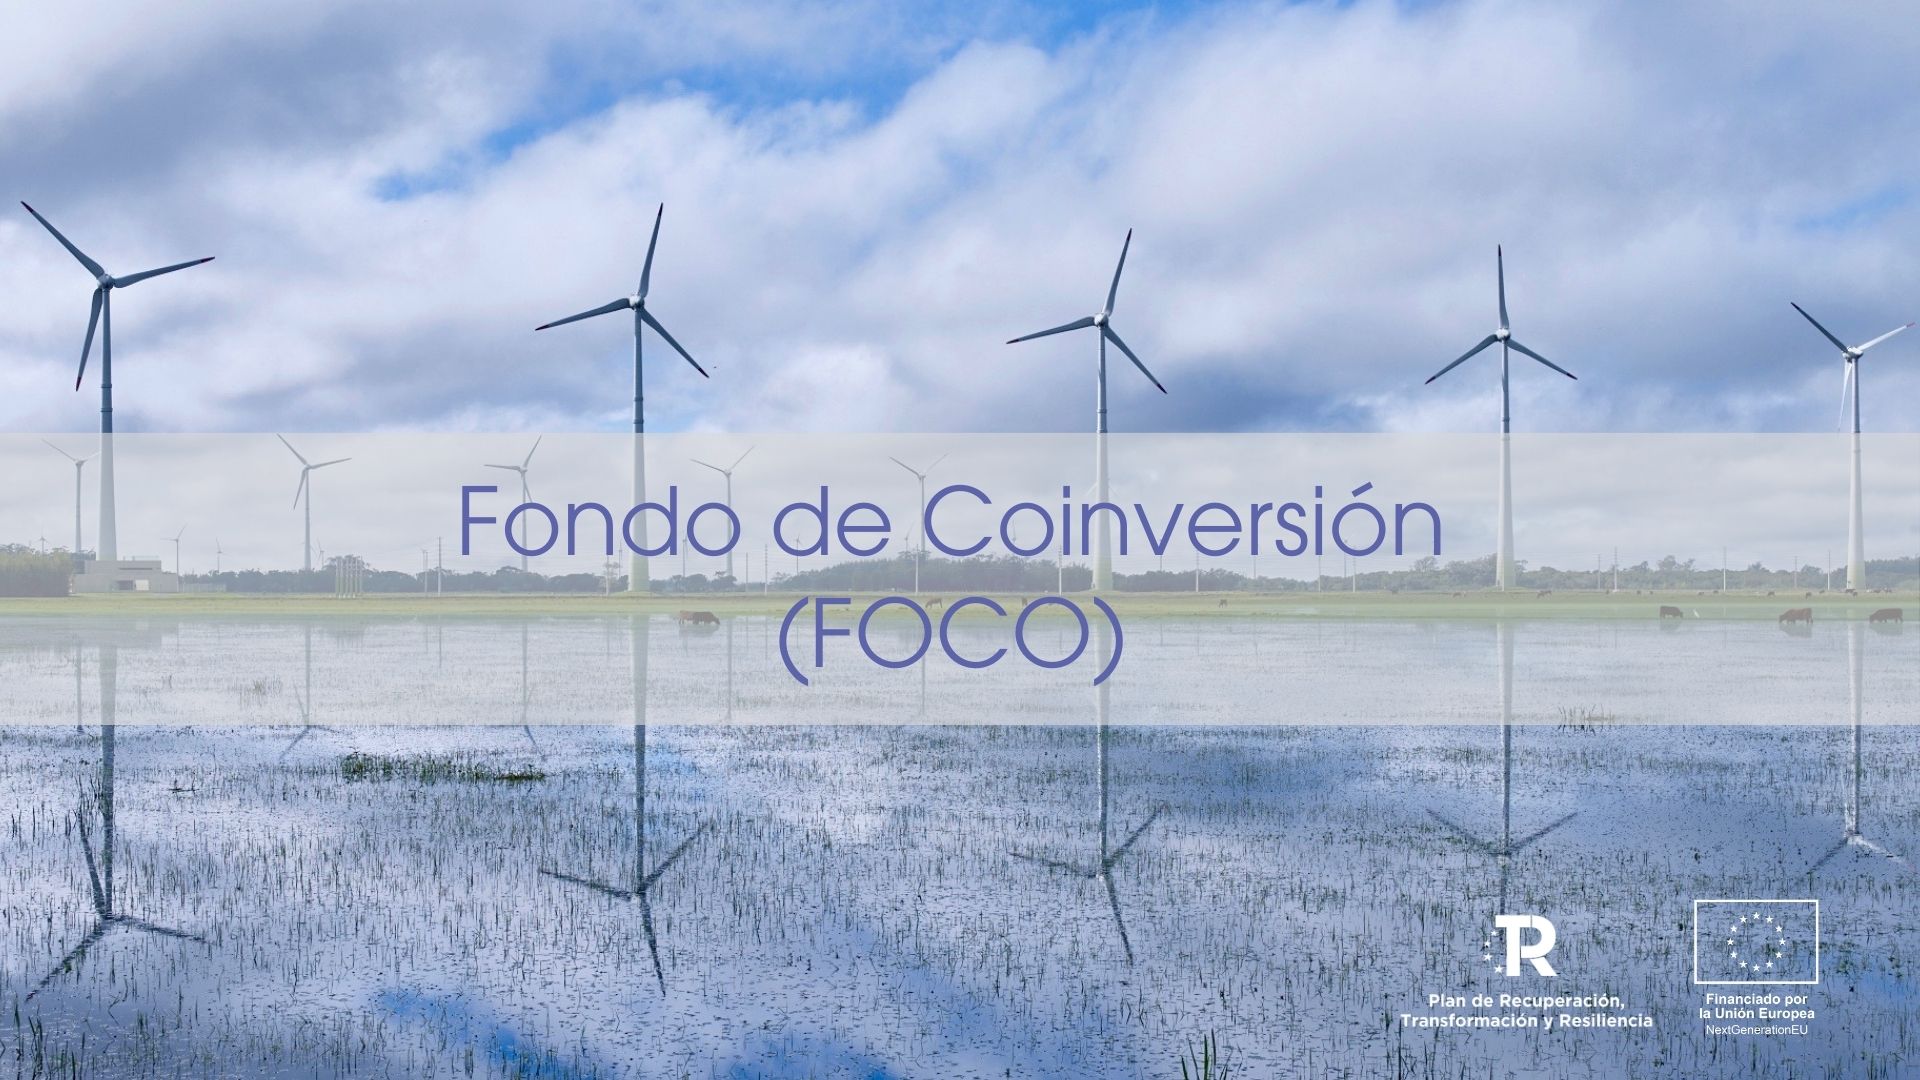 Imagen parque eólico. Banner promocional del Fondo de Coinversión (FOCO)